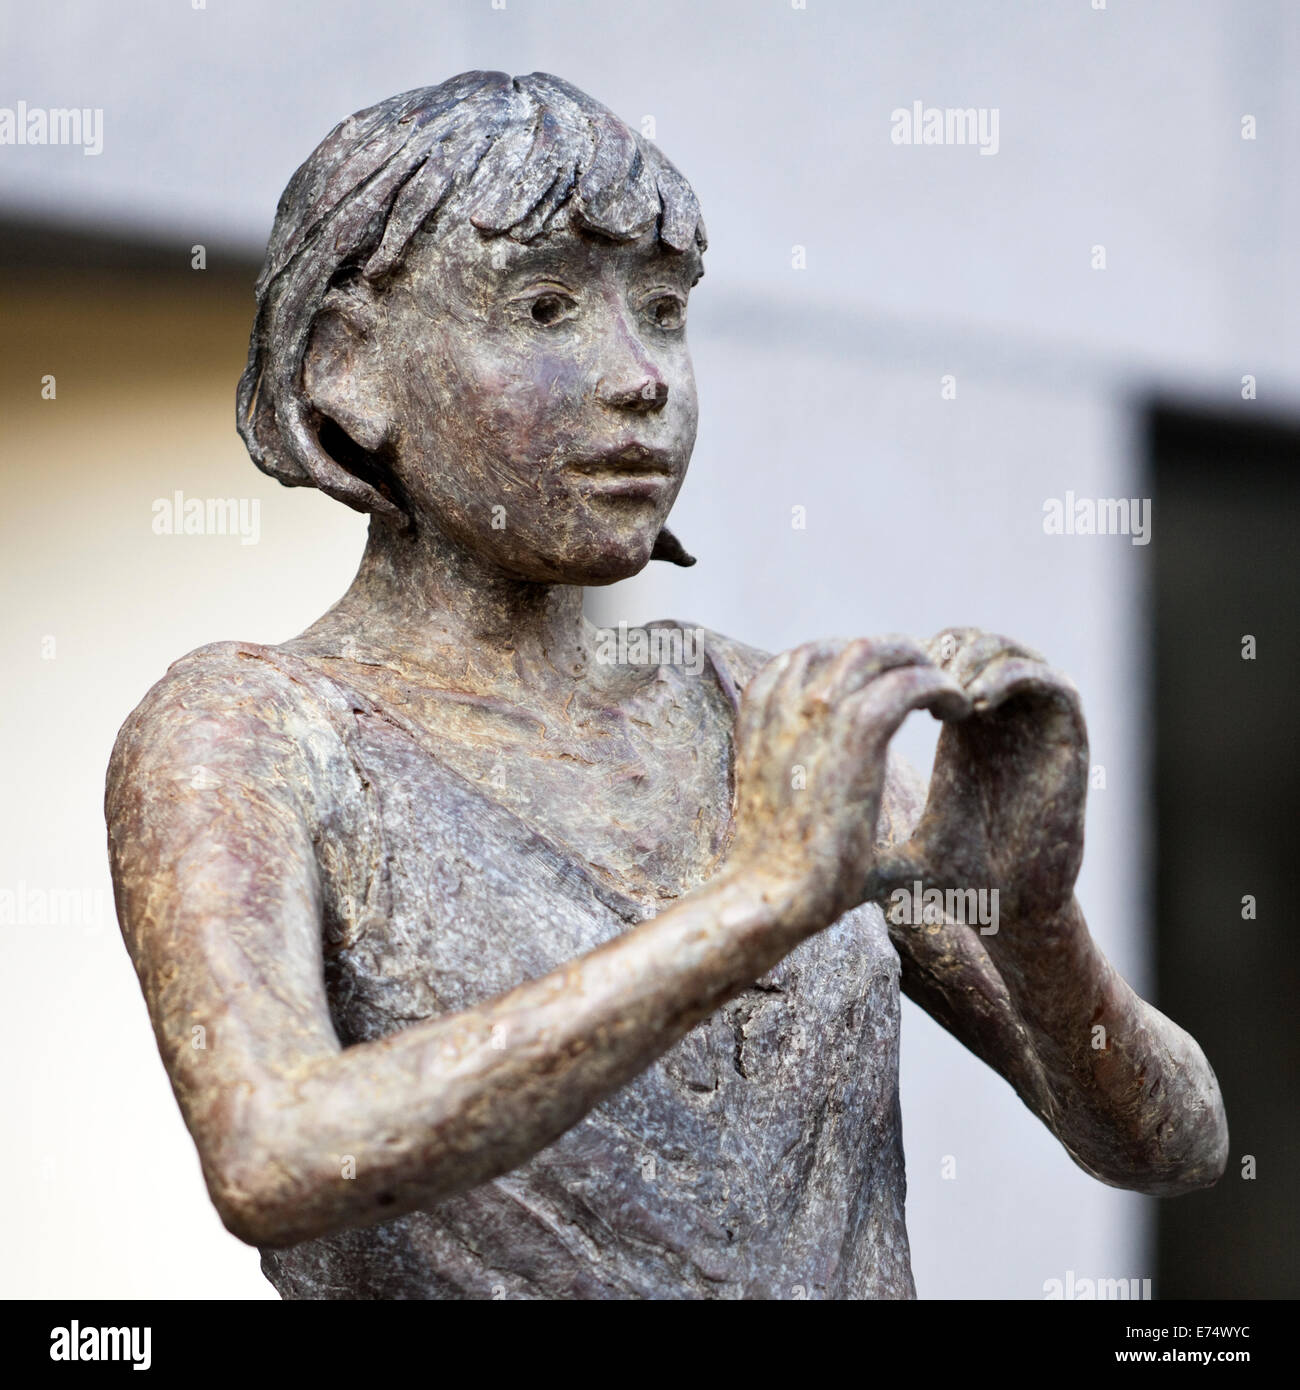 La scultura in bronzo di una giovane ragazza da scultore francese JURGA, sul display al di fuori di una galleria a Gand, Belgio (Estate 2014) Foto Stock